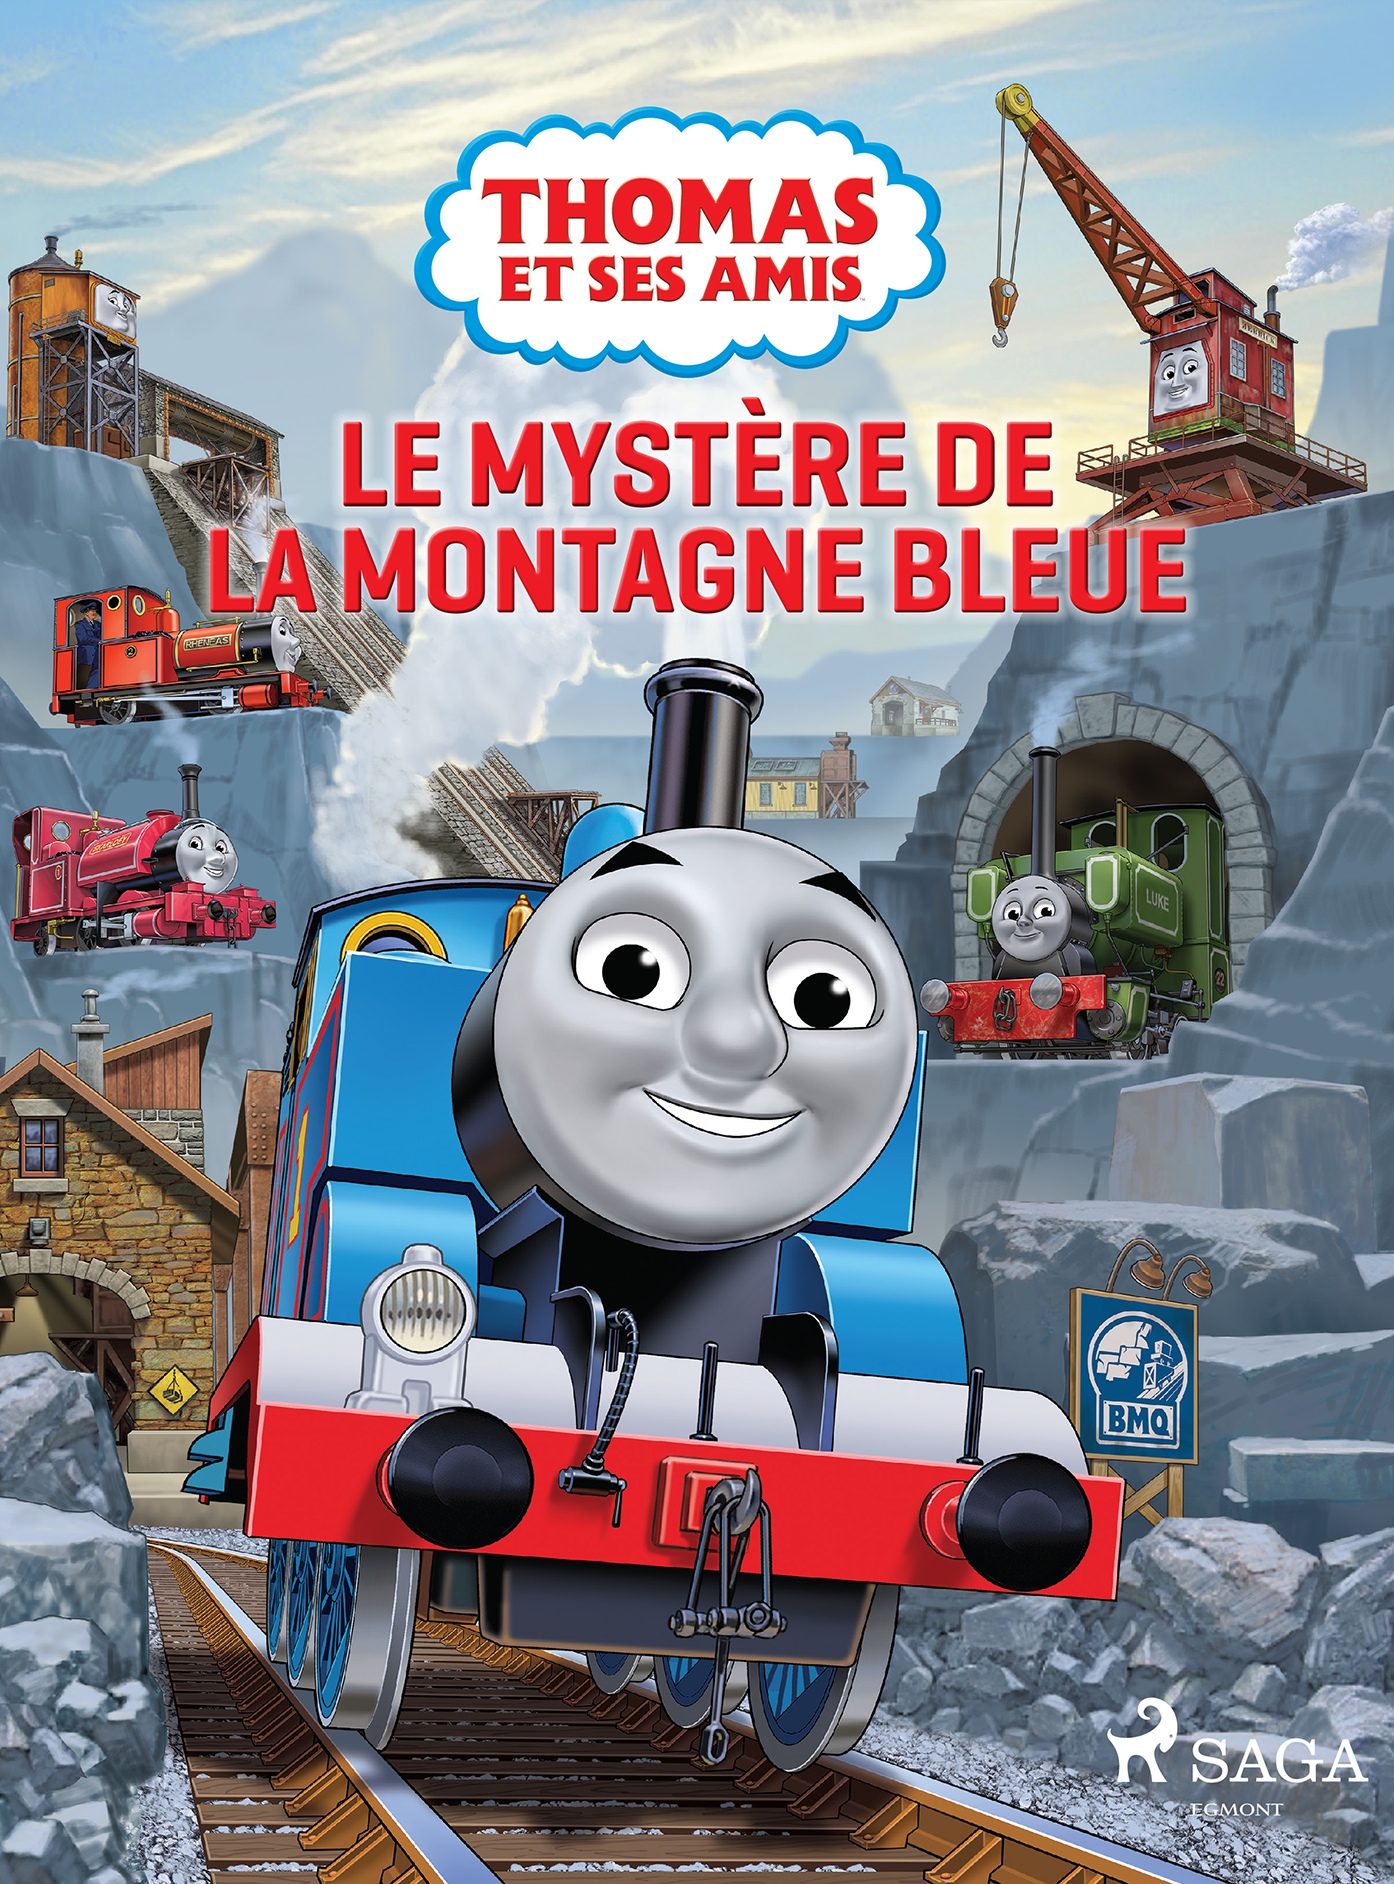 Thomas et ses amis - Le mystère de la montagne bleue